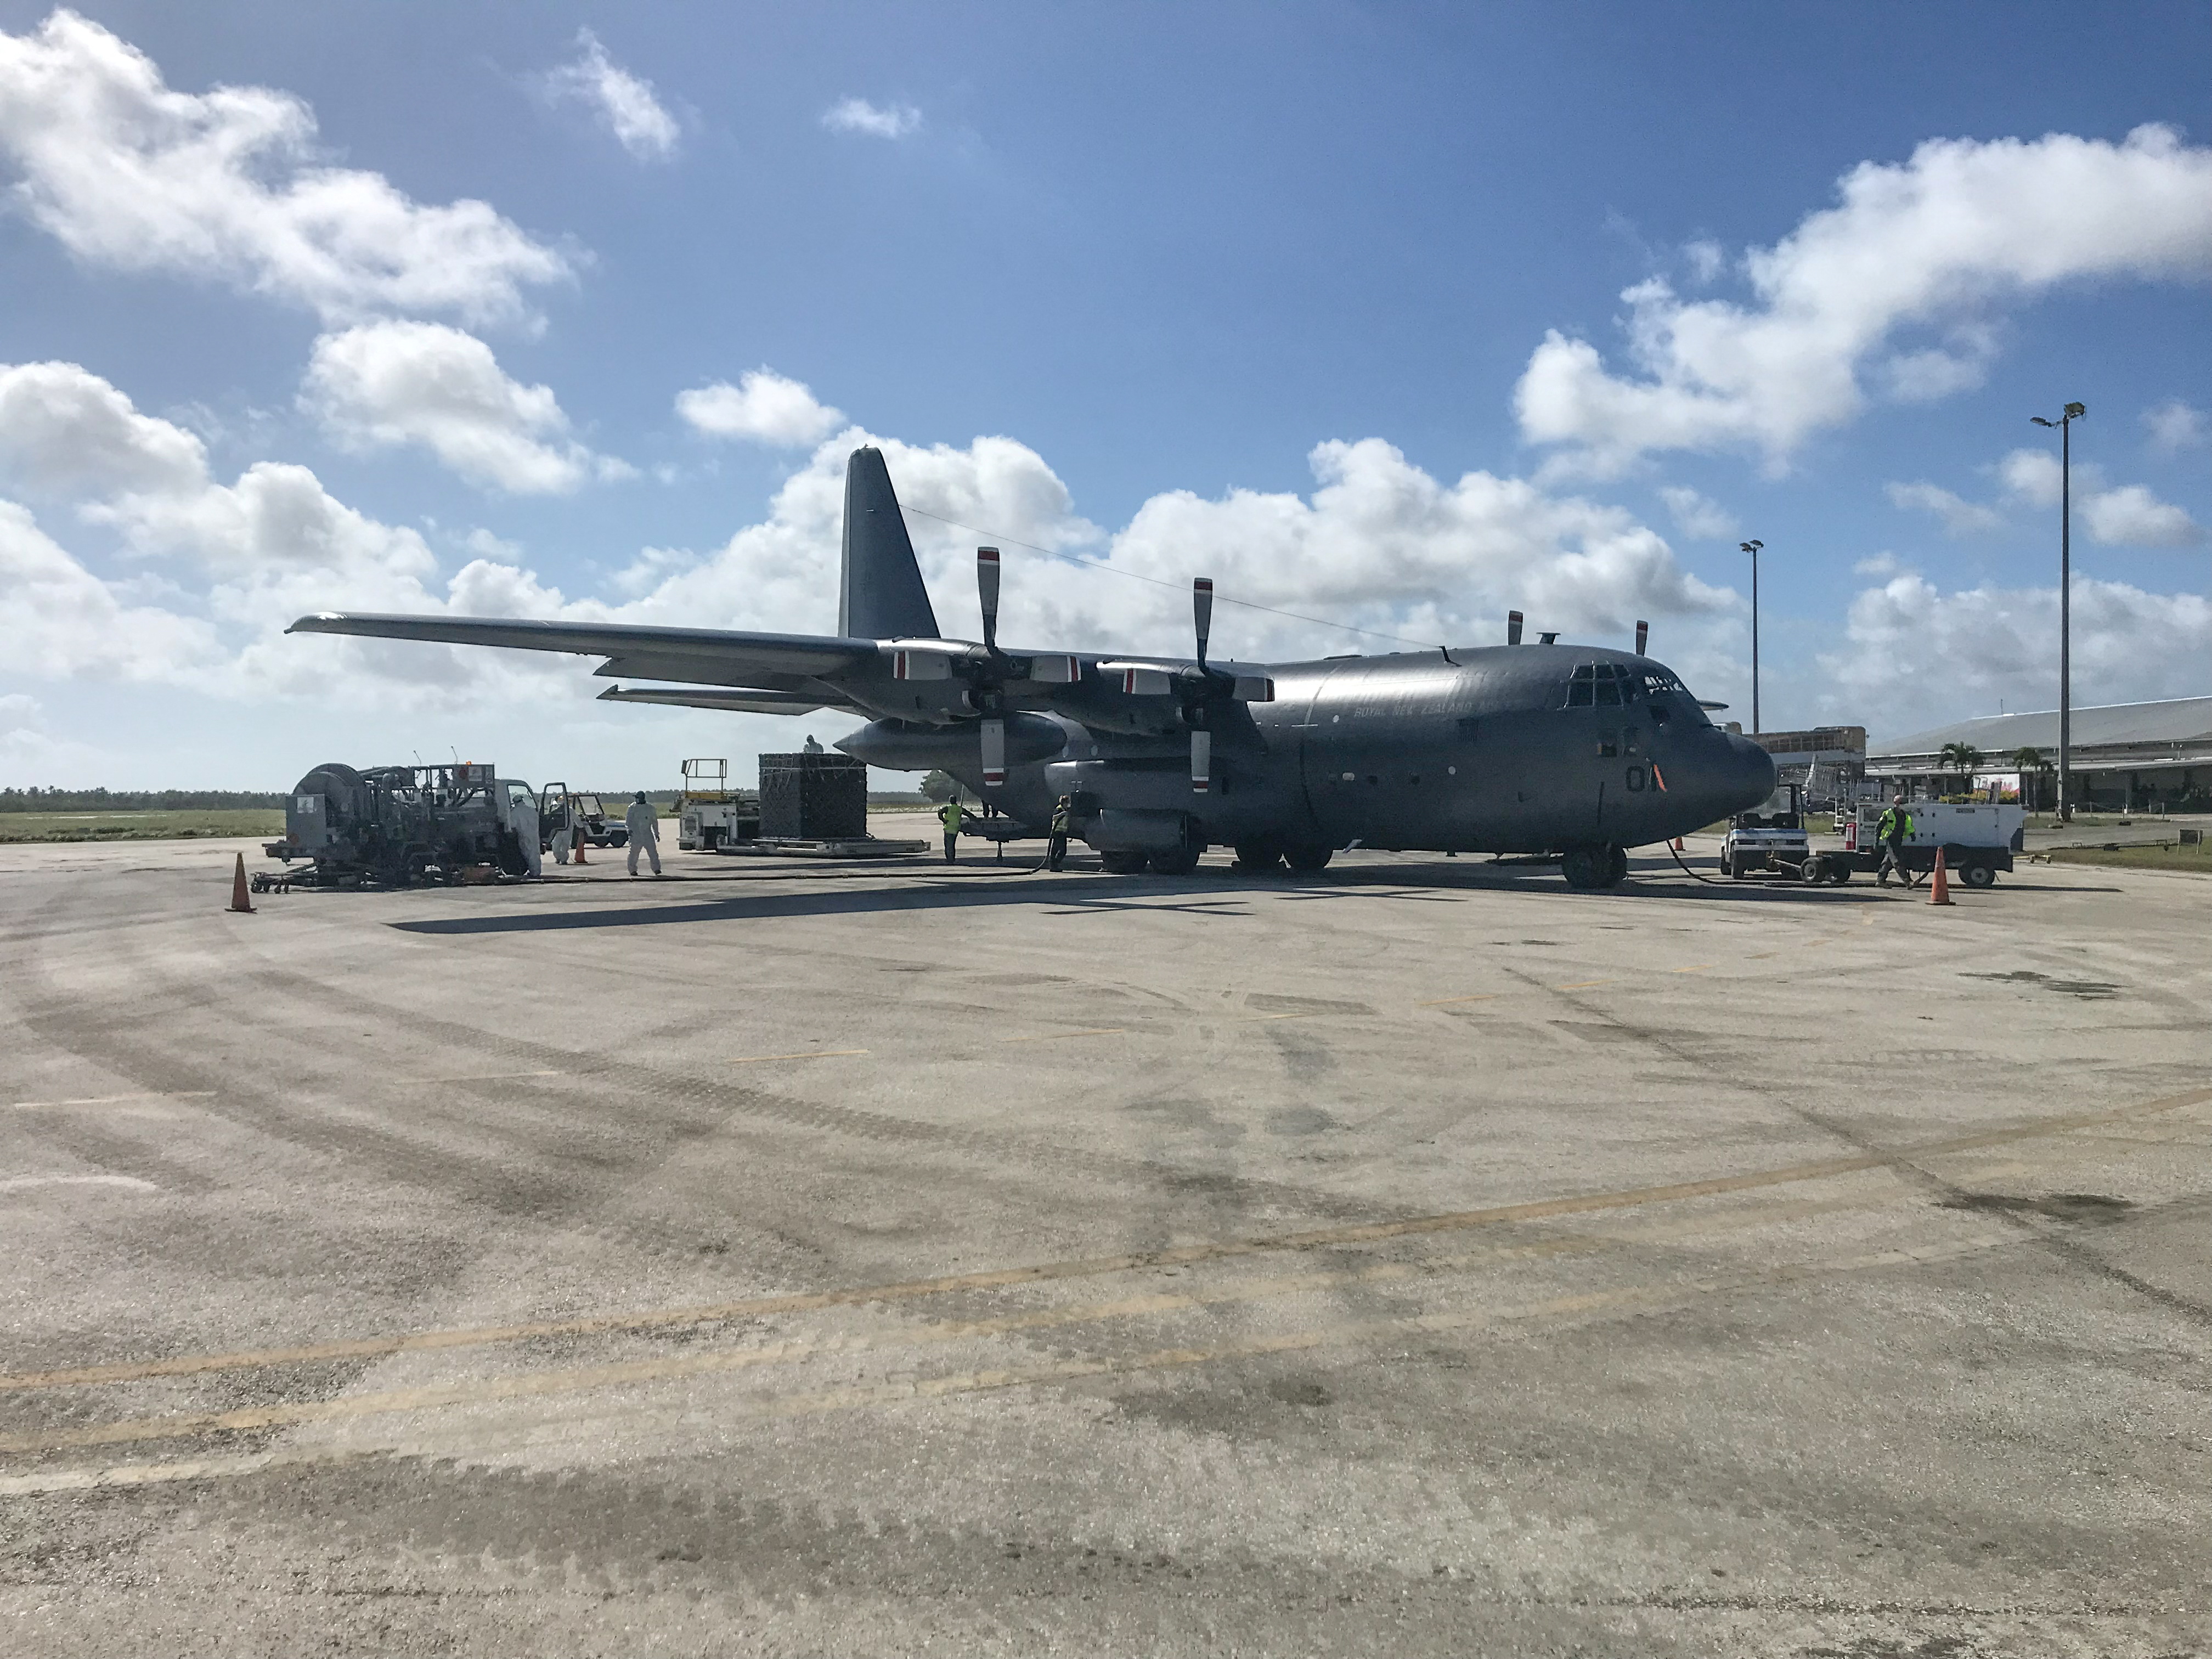 Un vuelo de suministro de ayuda humanitaria de Nueva Zelanda se ve en el aeropuerto internacional de Fua'amotu en la isla de Tongatapu, Tonga, 20 de enero de 2022. Foto tomada el 20 de enero de 2022. Fuerza de Defensa de Nueva Zelanda/Handout via REUTERS